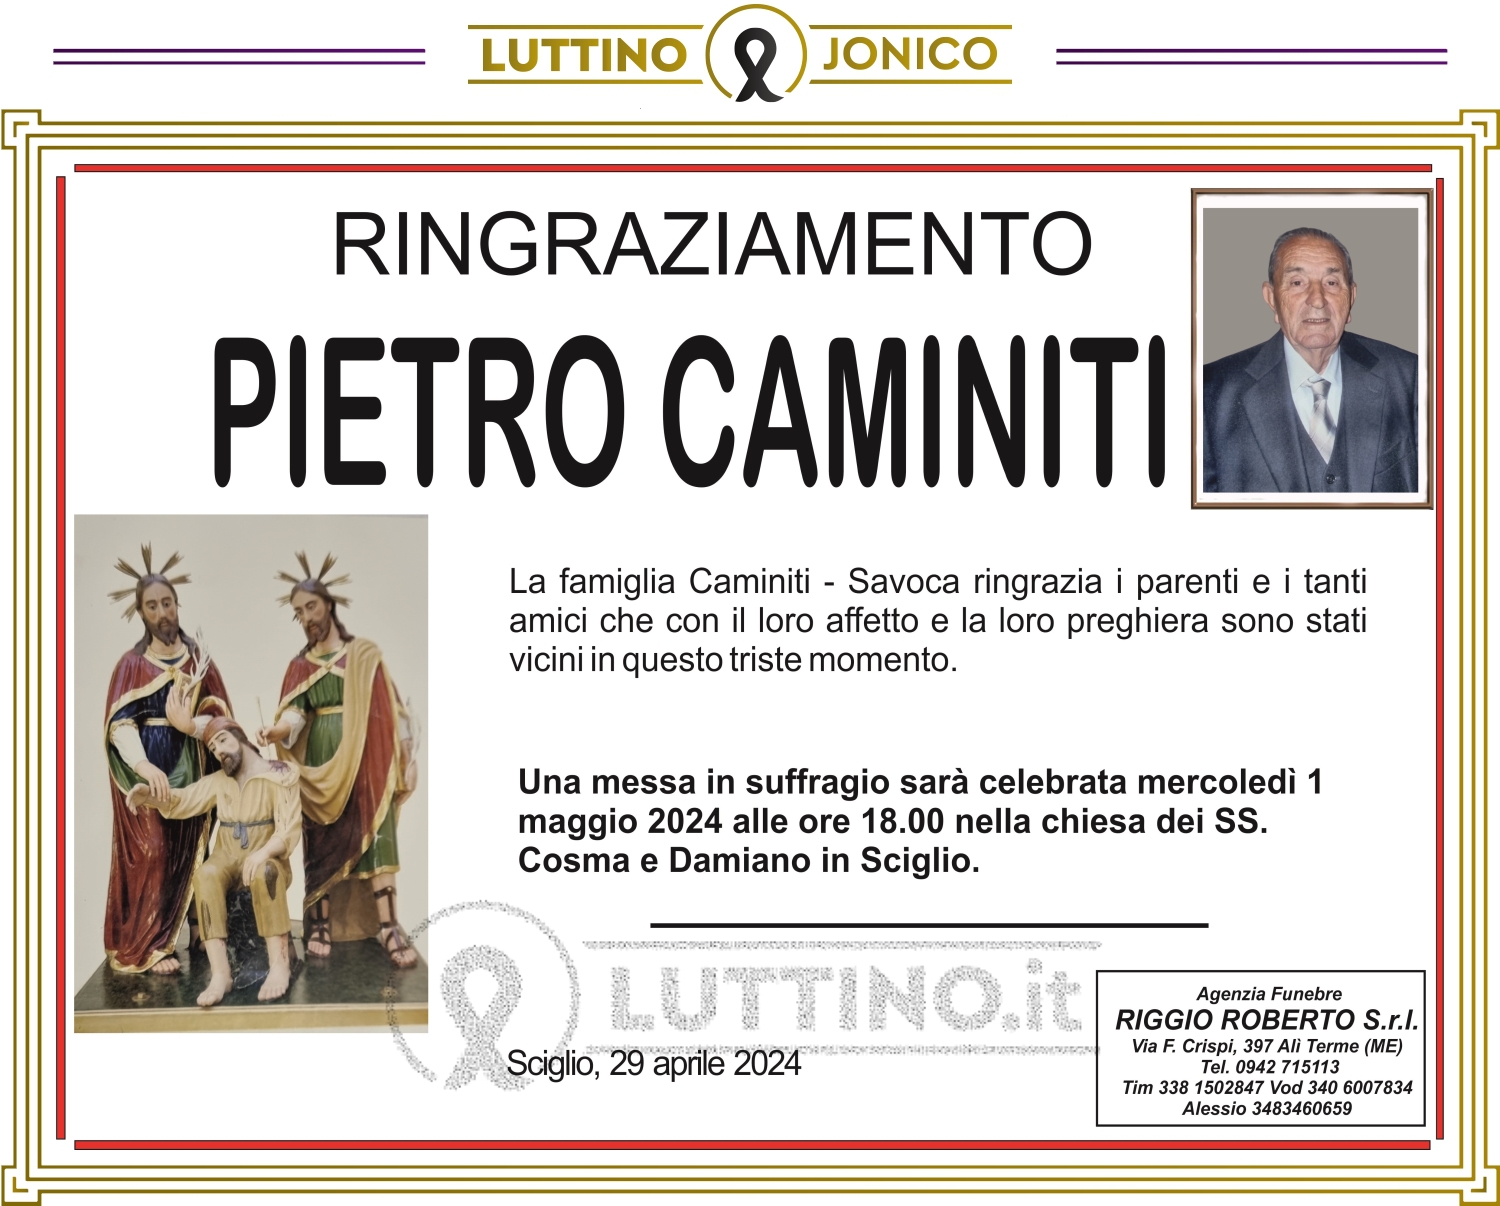 Pietro Caminiti